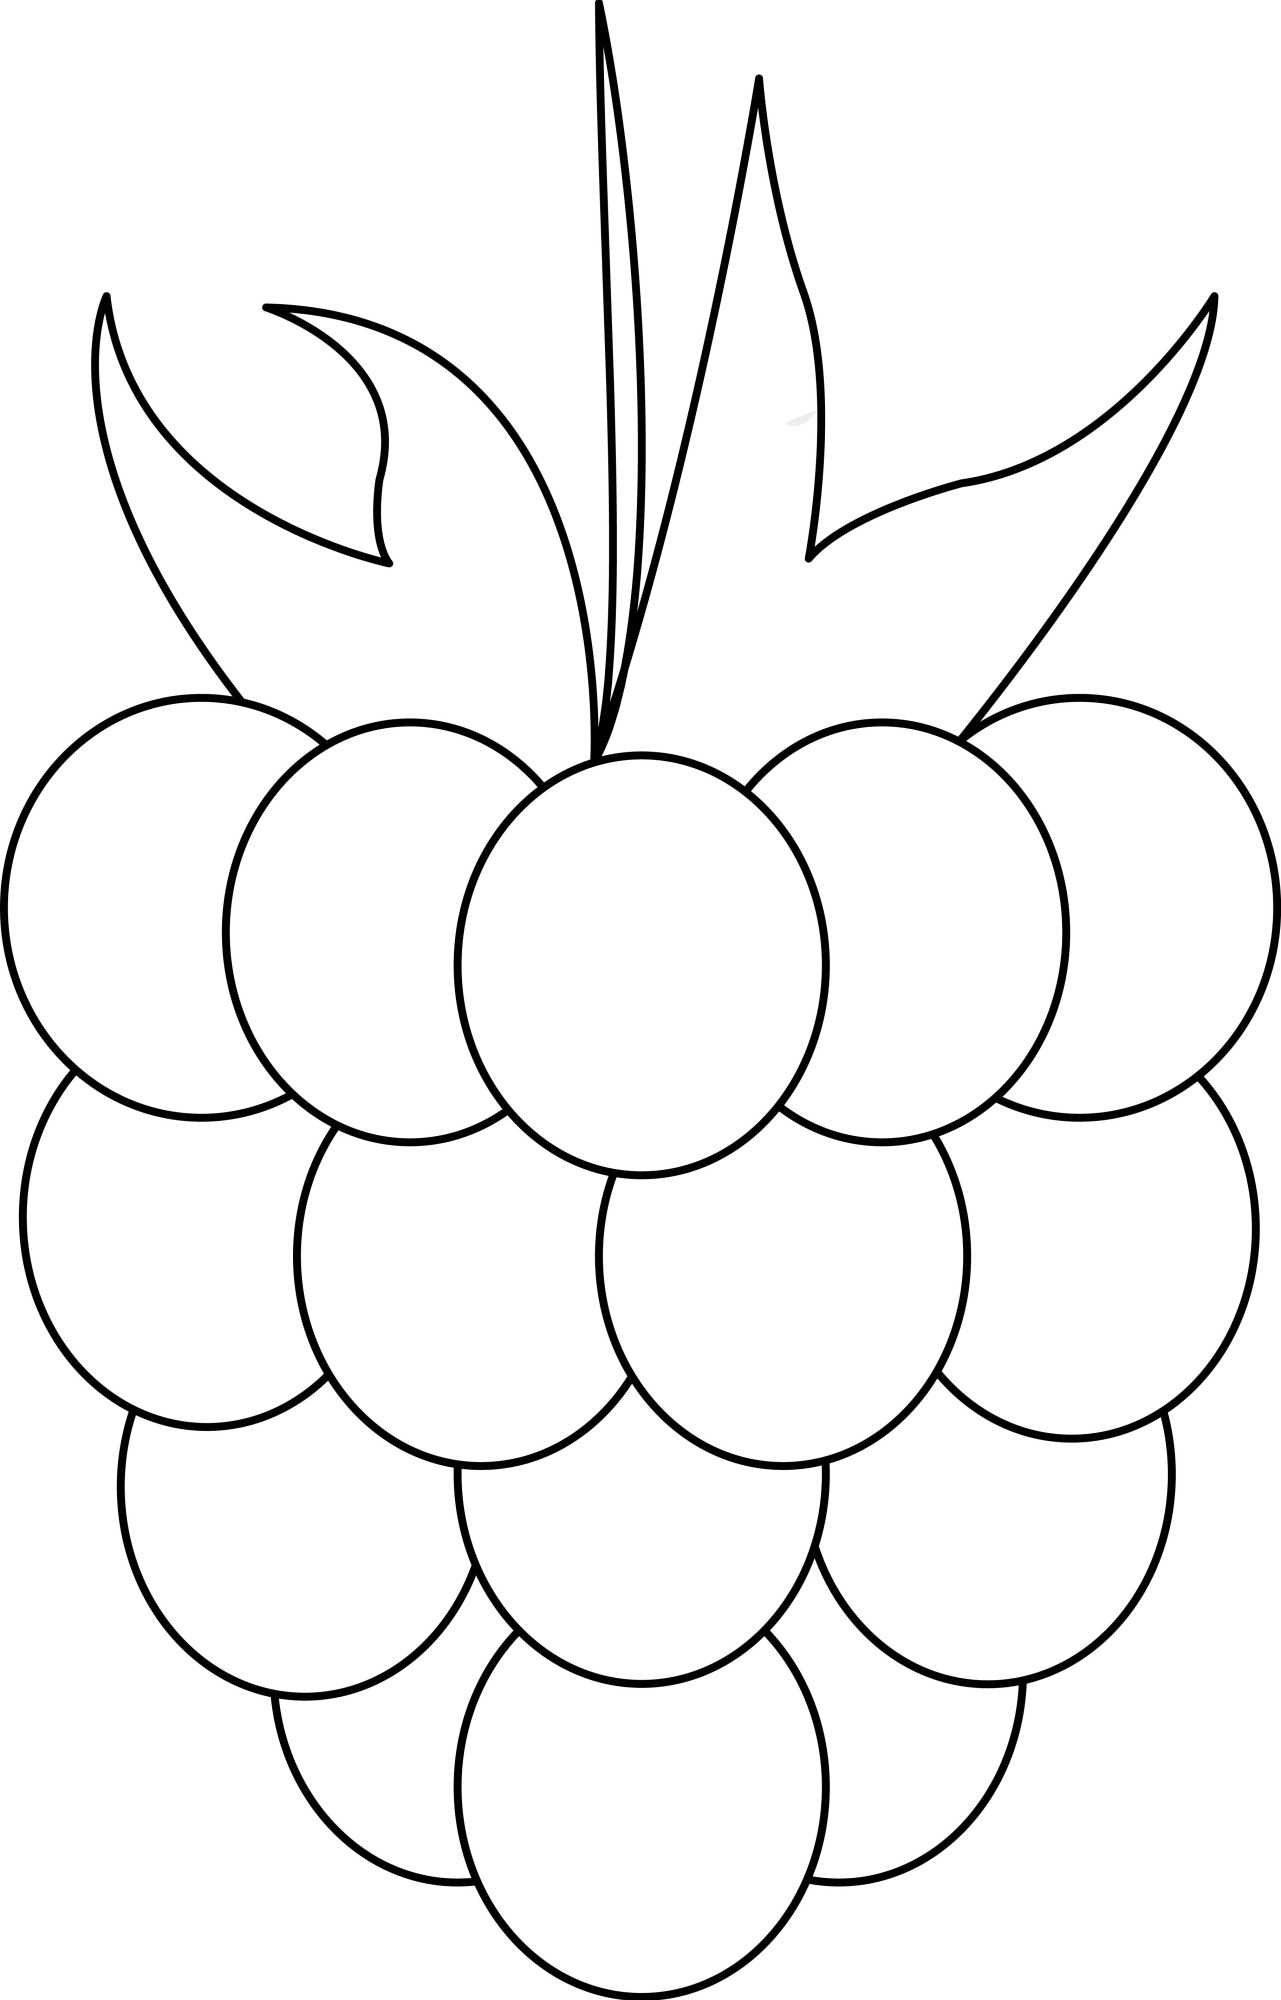 Раскраска для детей: ягода малина крупным планом